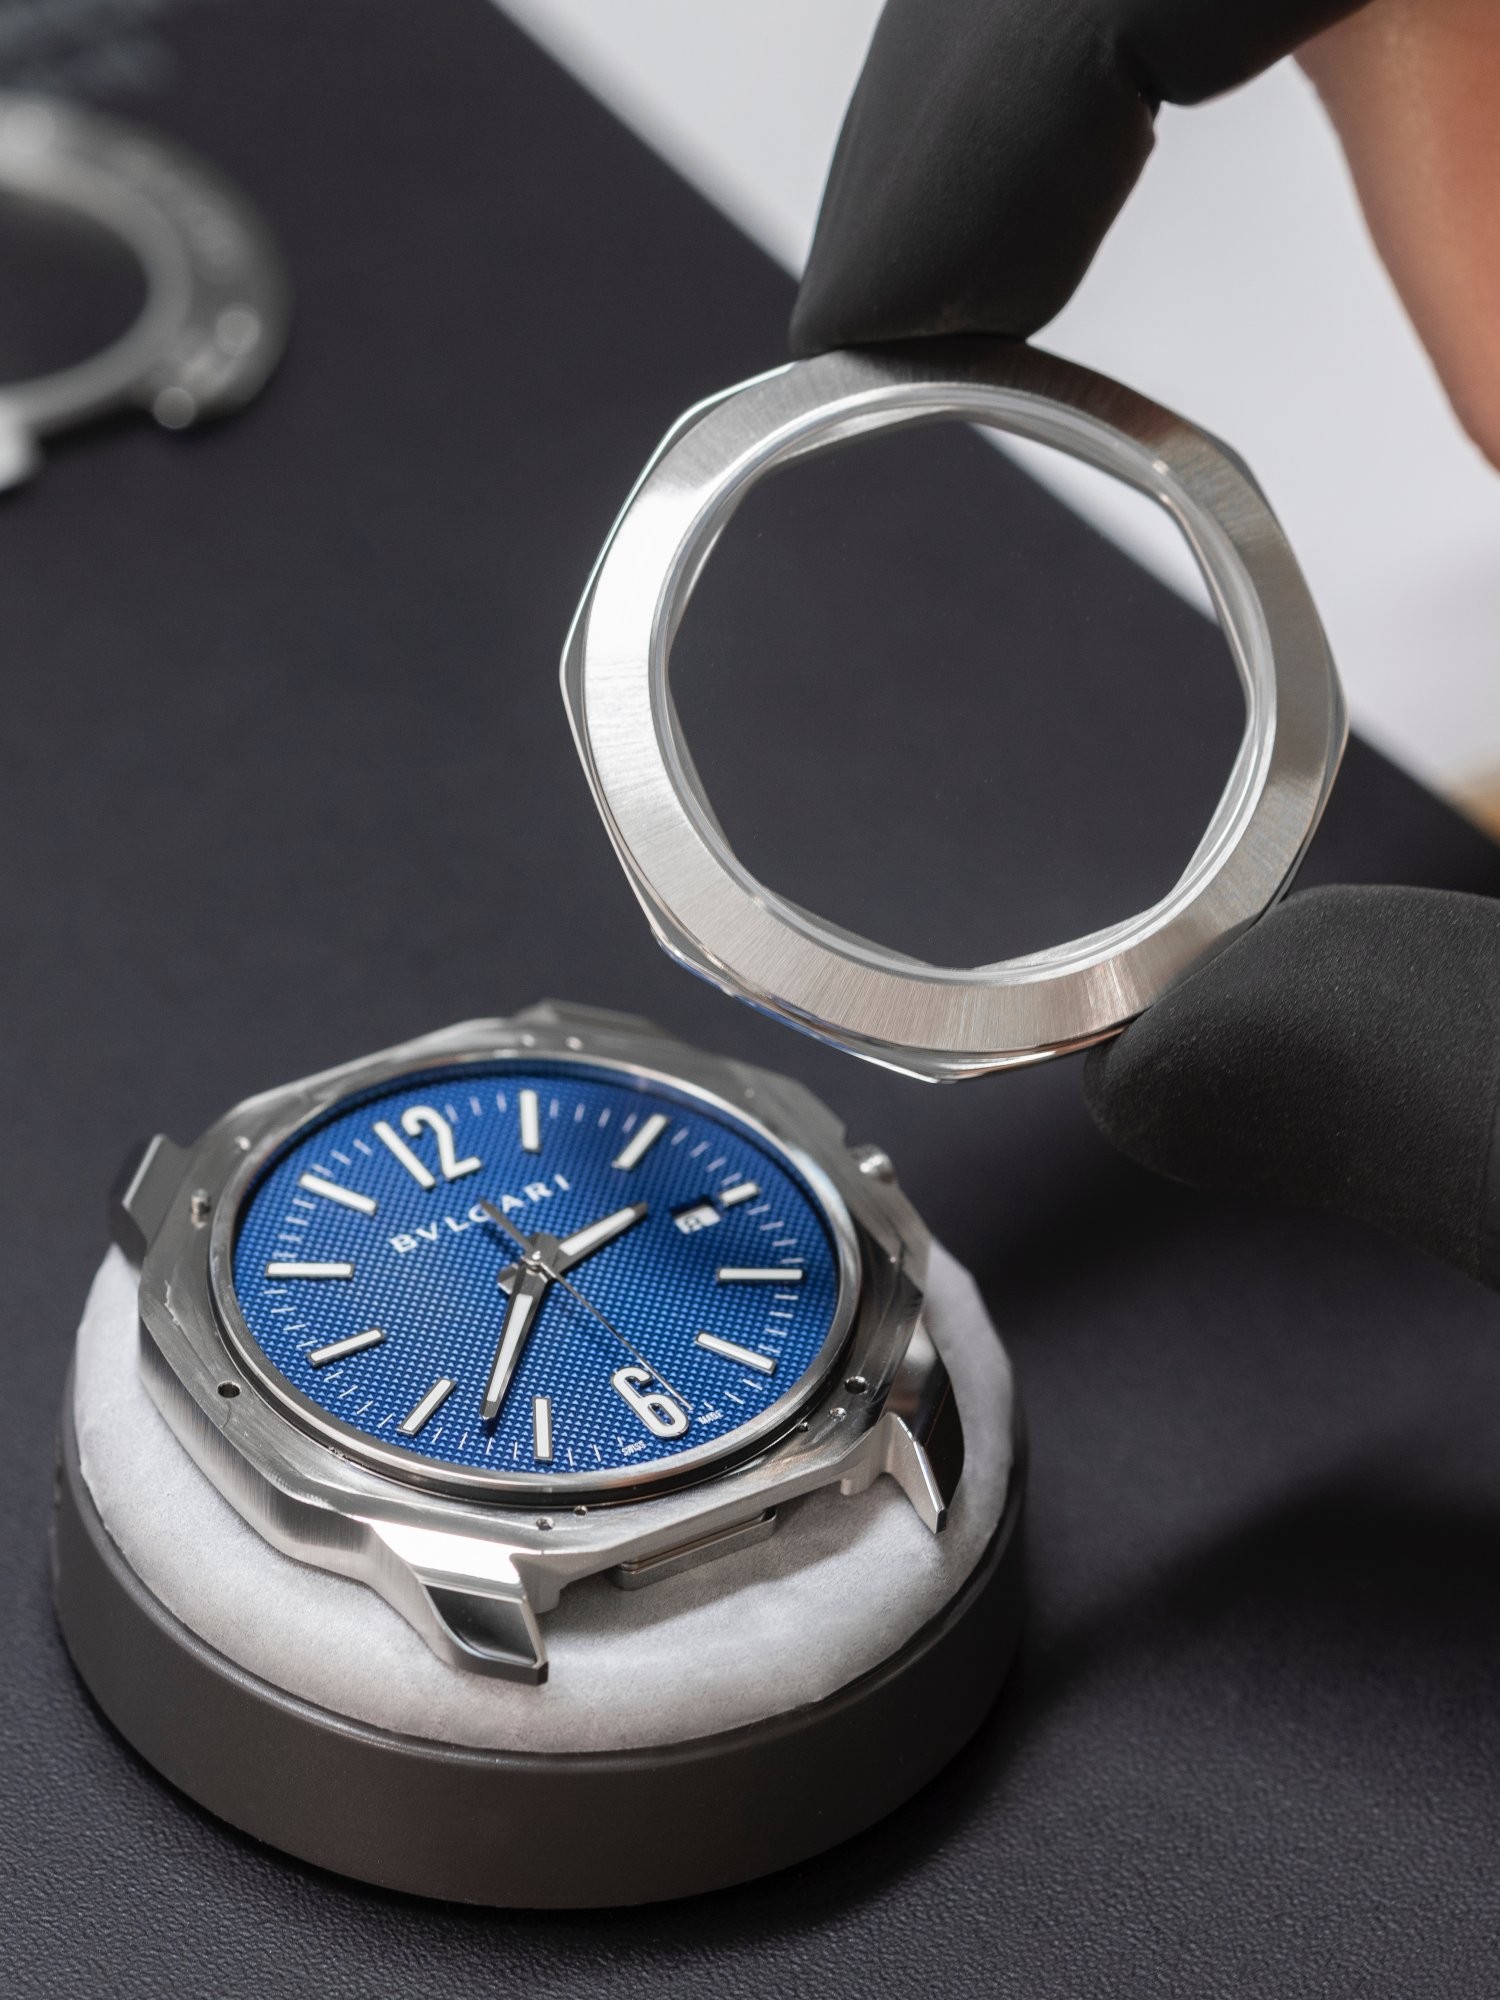 寶格麗Octo系列最著名就是八角造型以及切面錶殼設計。Octo Roma把銳利改成圓潤，展現寶格麗設計方面的可變性。